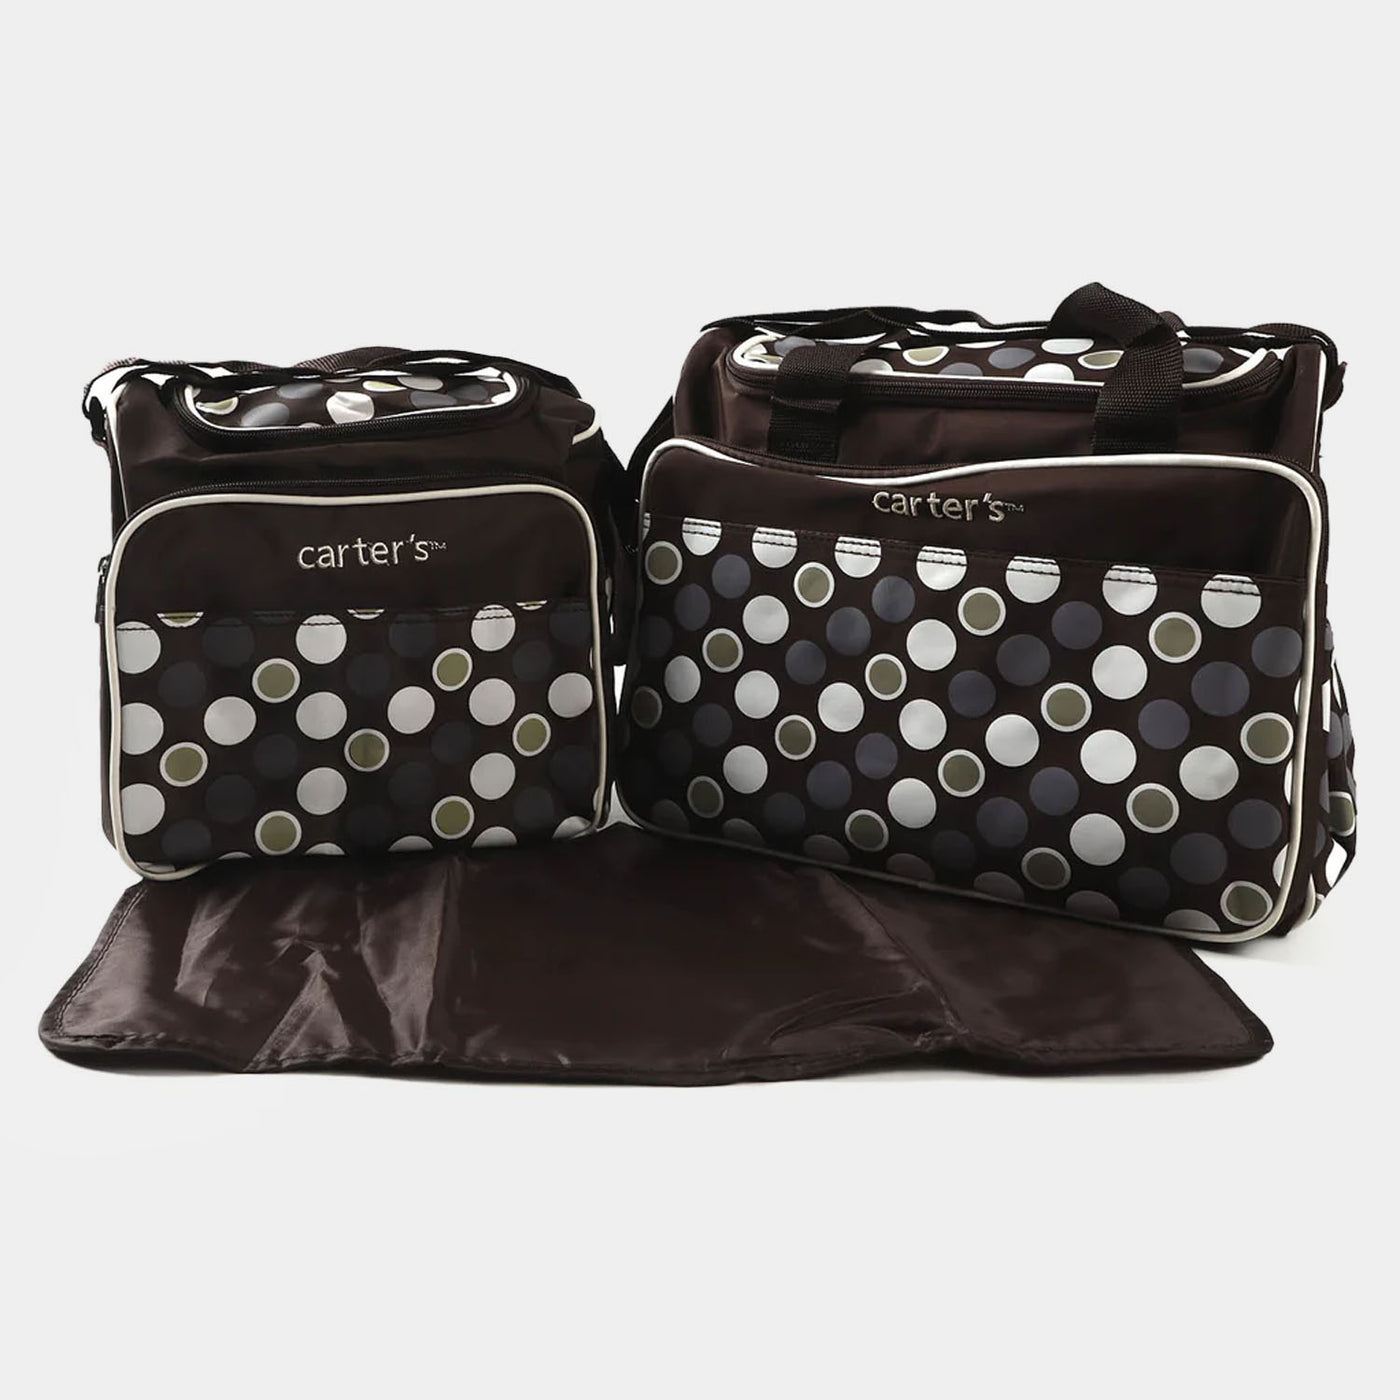 3Pcs/Set Baby Diaper Bag Large Capacity - BROWN